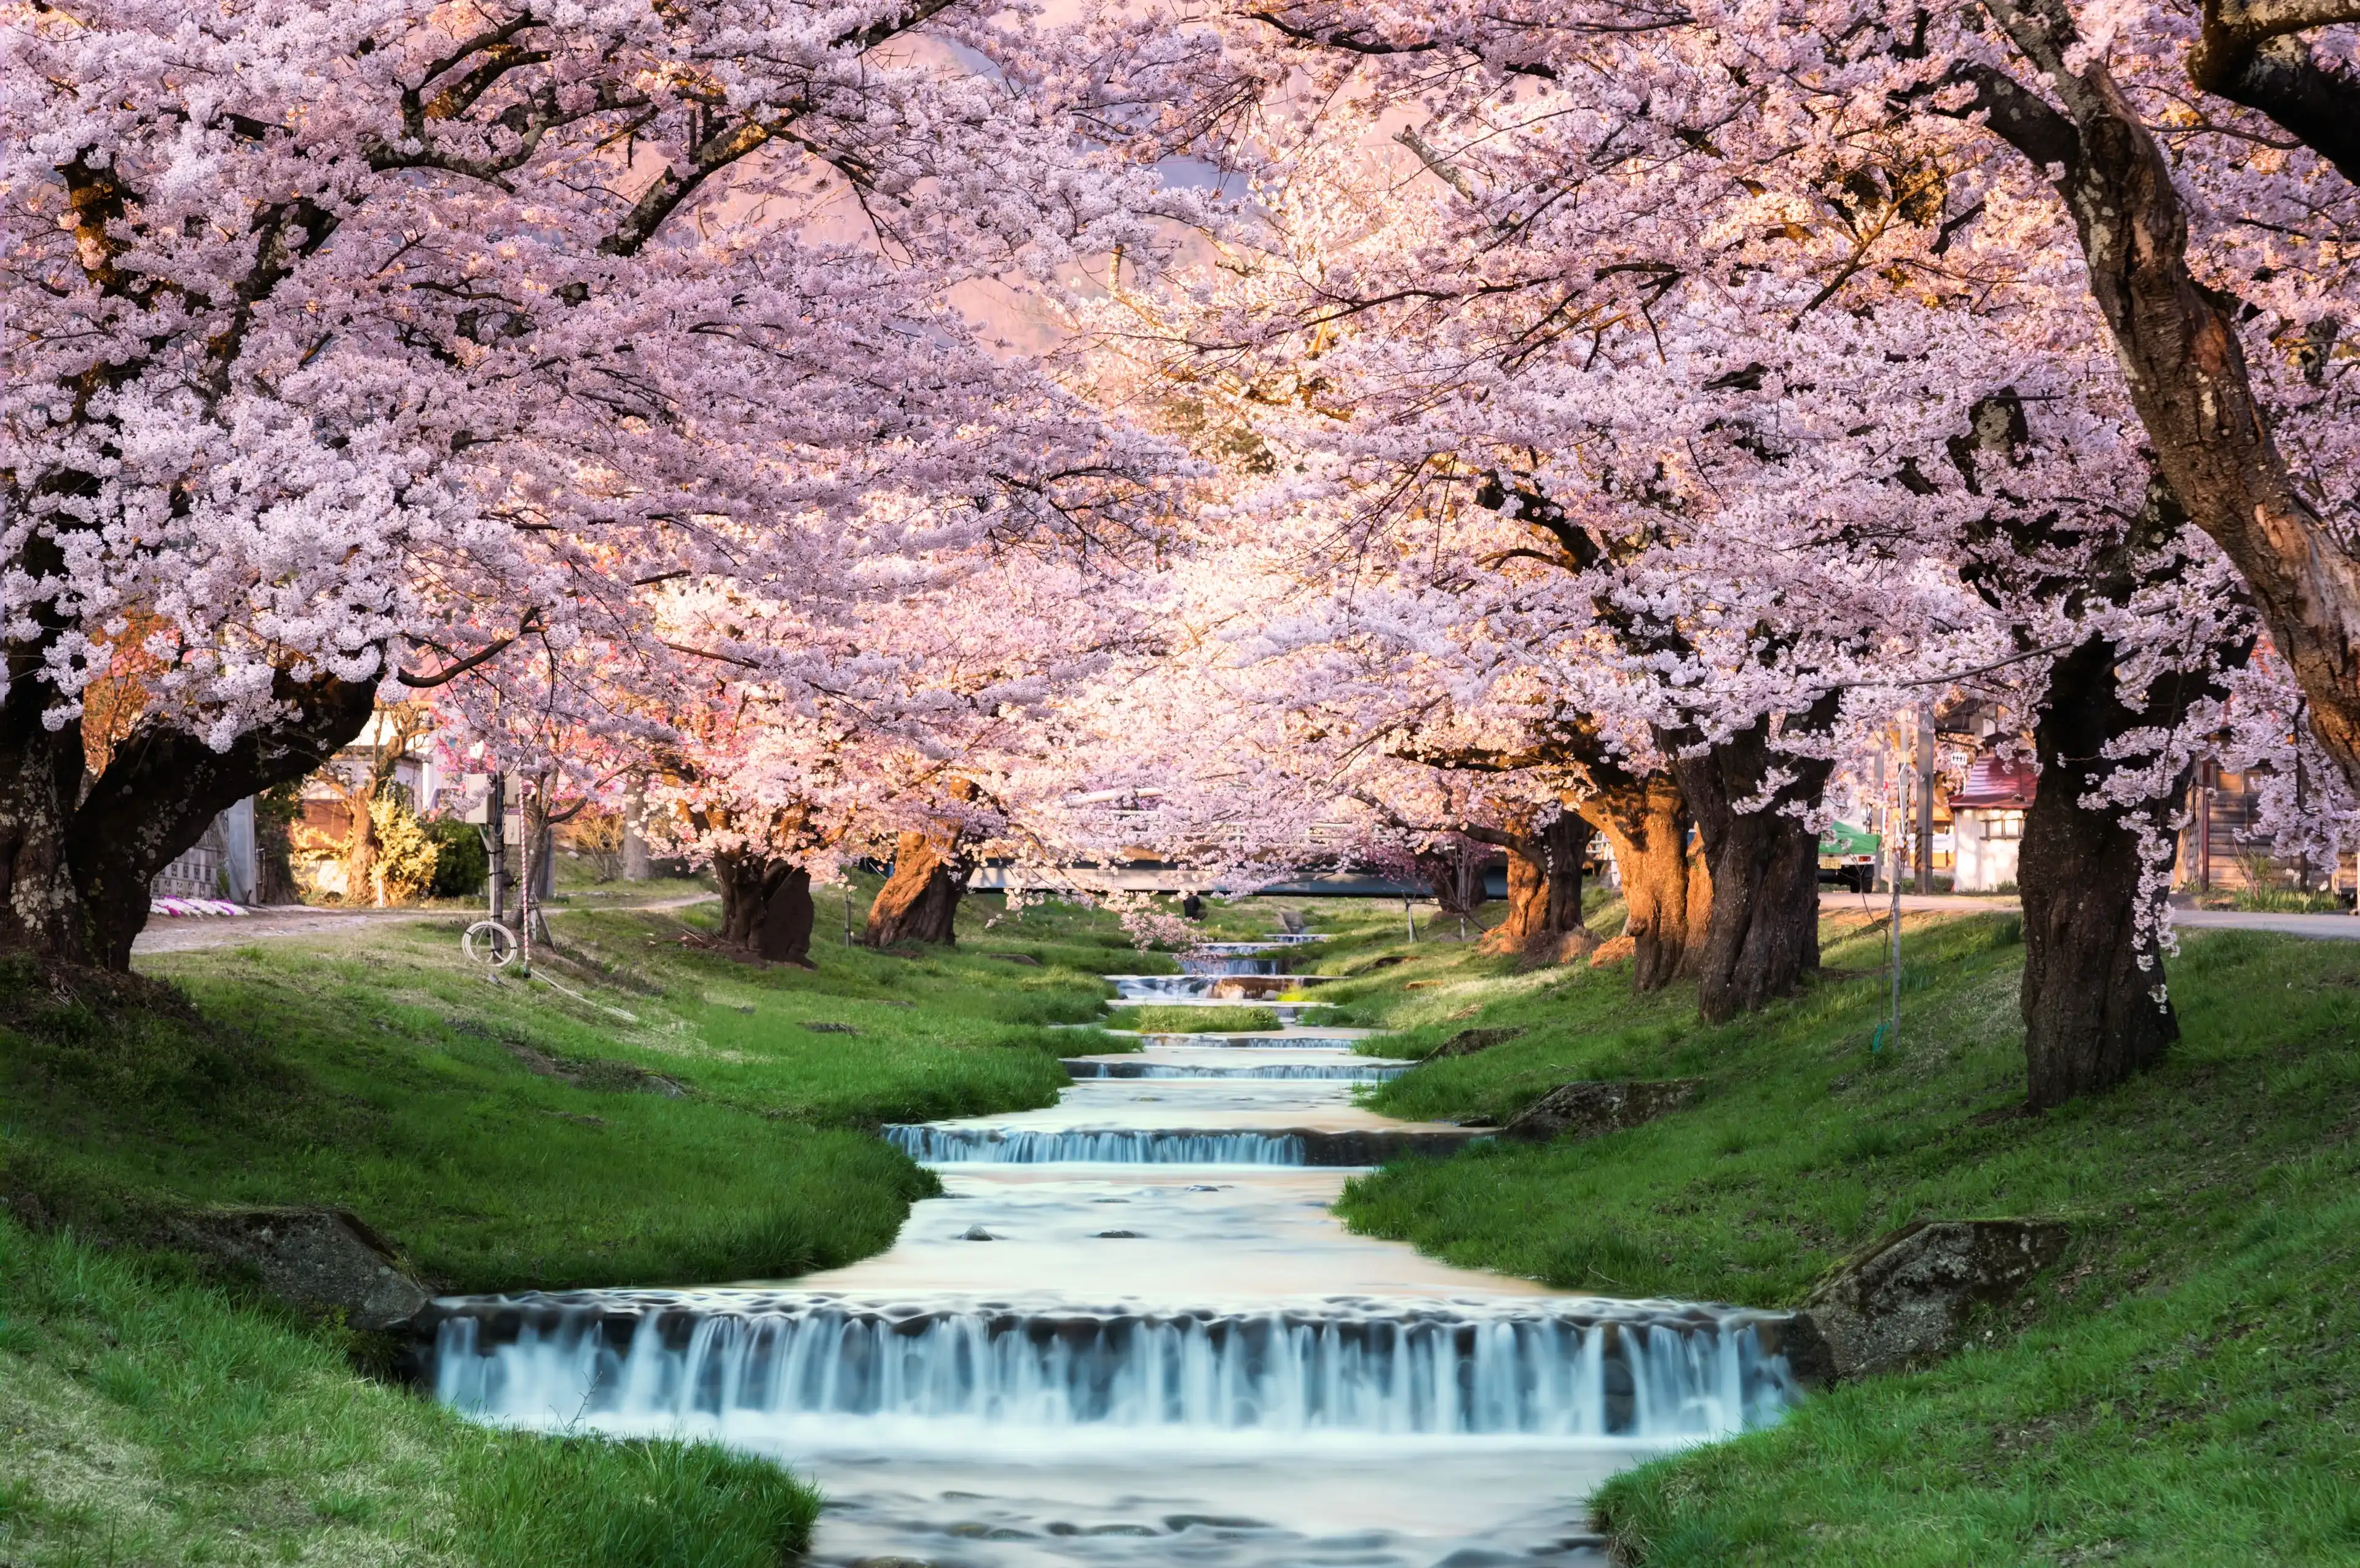 Cherry blossoms at Kawageta Fukushima ,Japan